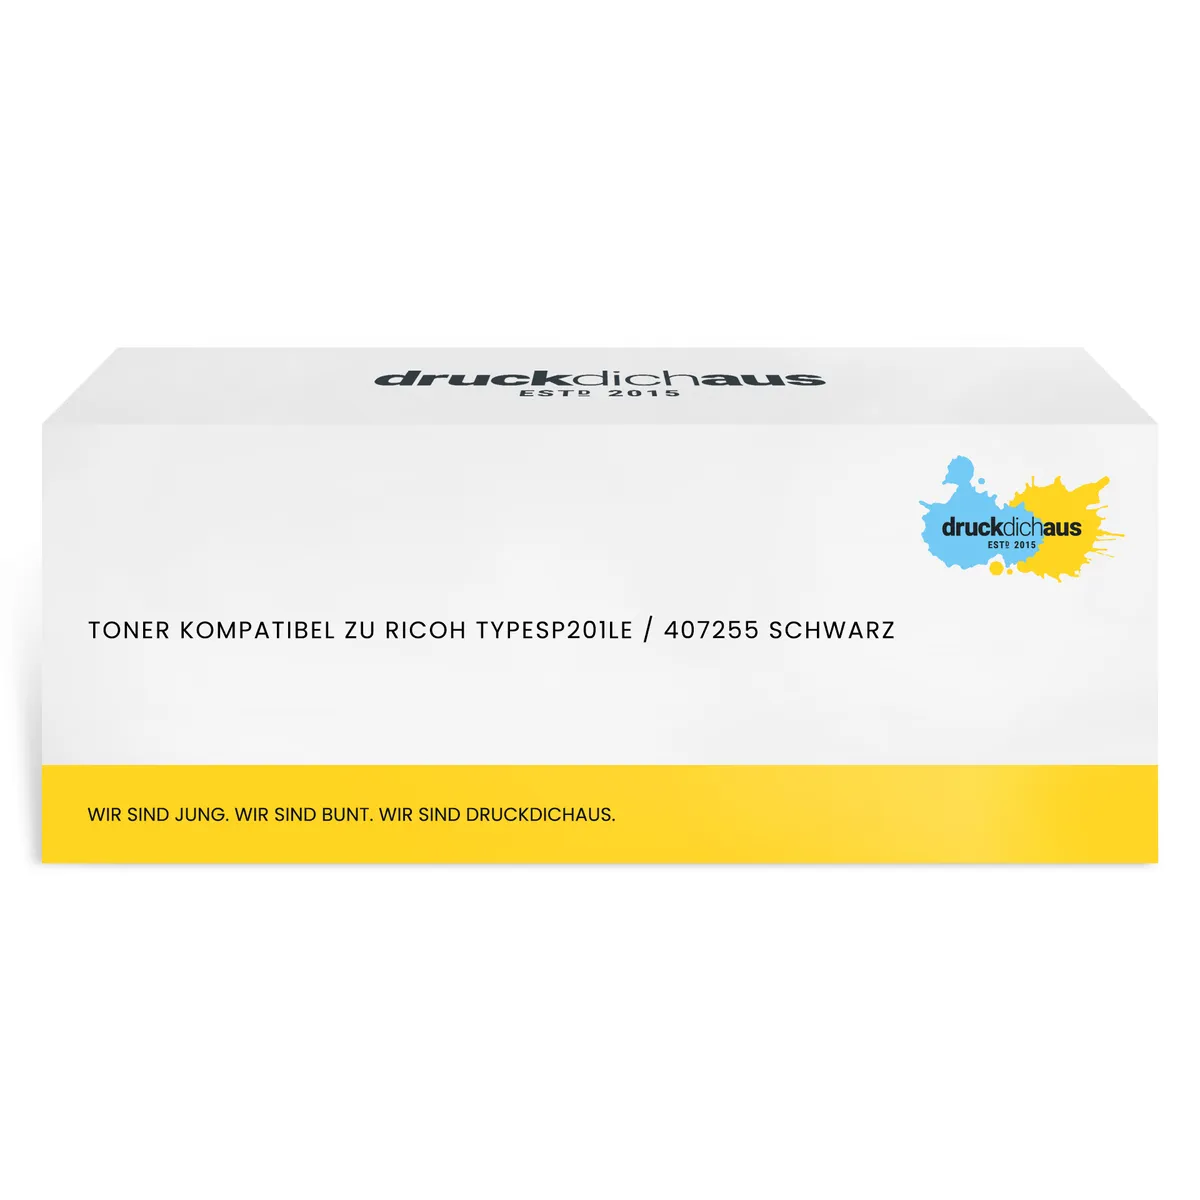 Toner kompatibel zu Ricoh TYPESP201LE / 407255 schwarz